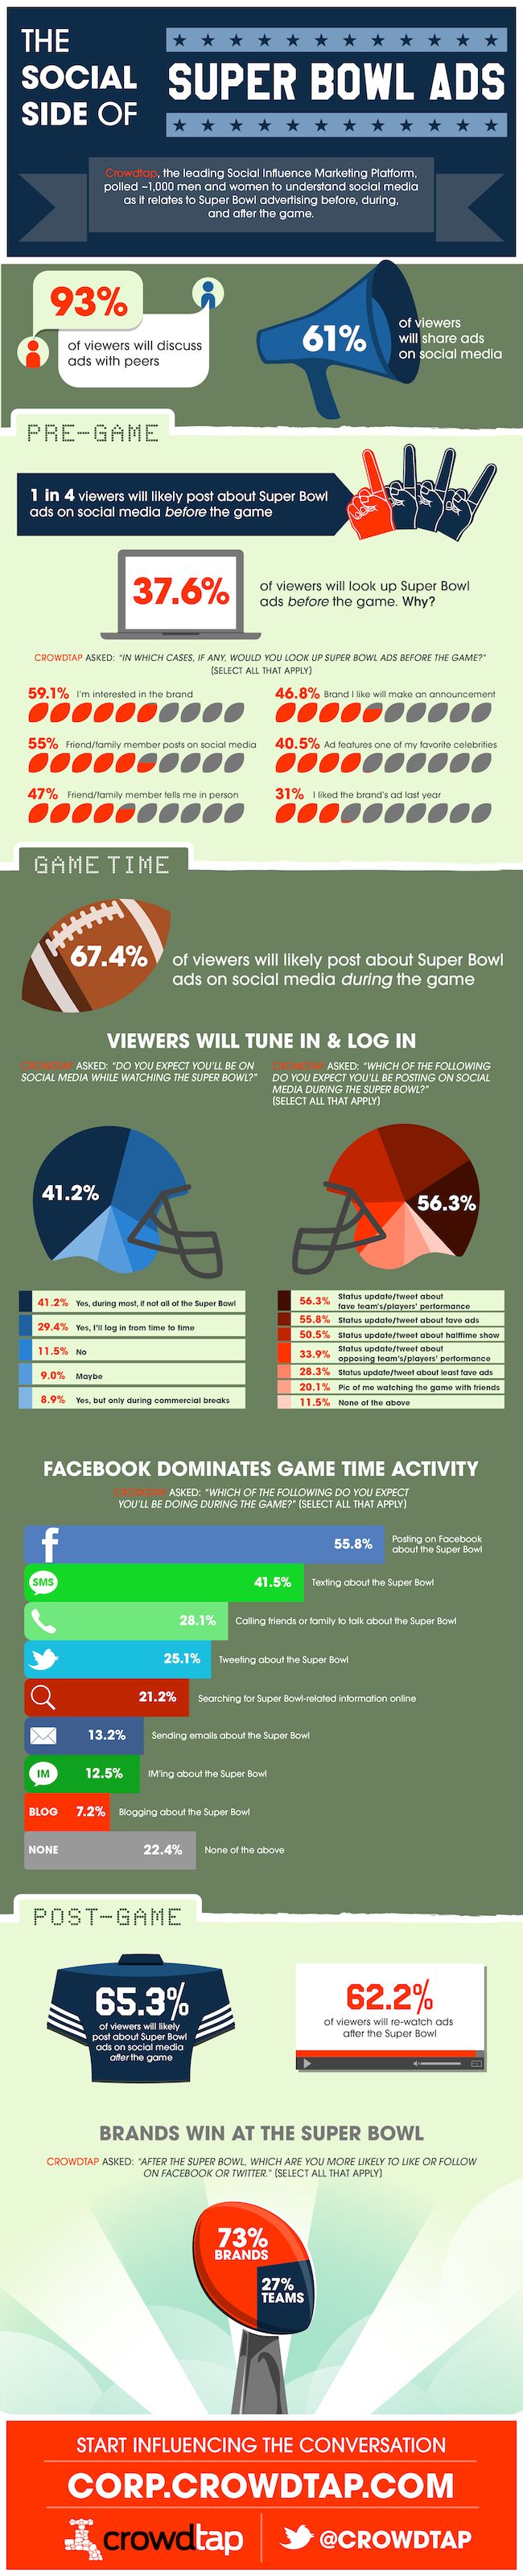 Advertising-Infographics-Super-Bowl-61-des-telespectateurs-partageront Advertising Infographics : Super Bowl : 61% des télespectateurs partageront les publicités sur les réseaux sociaux